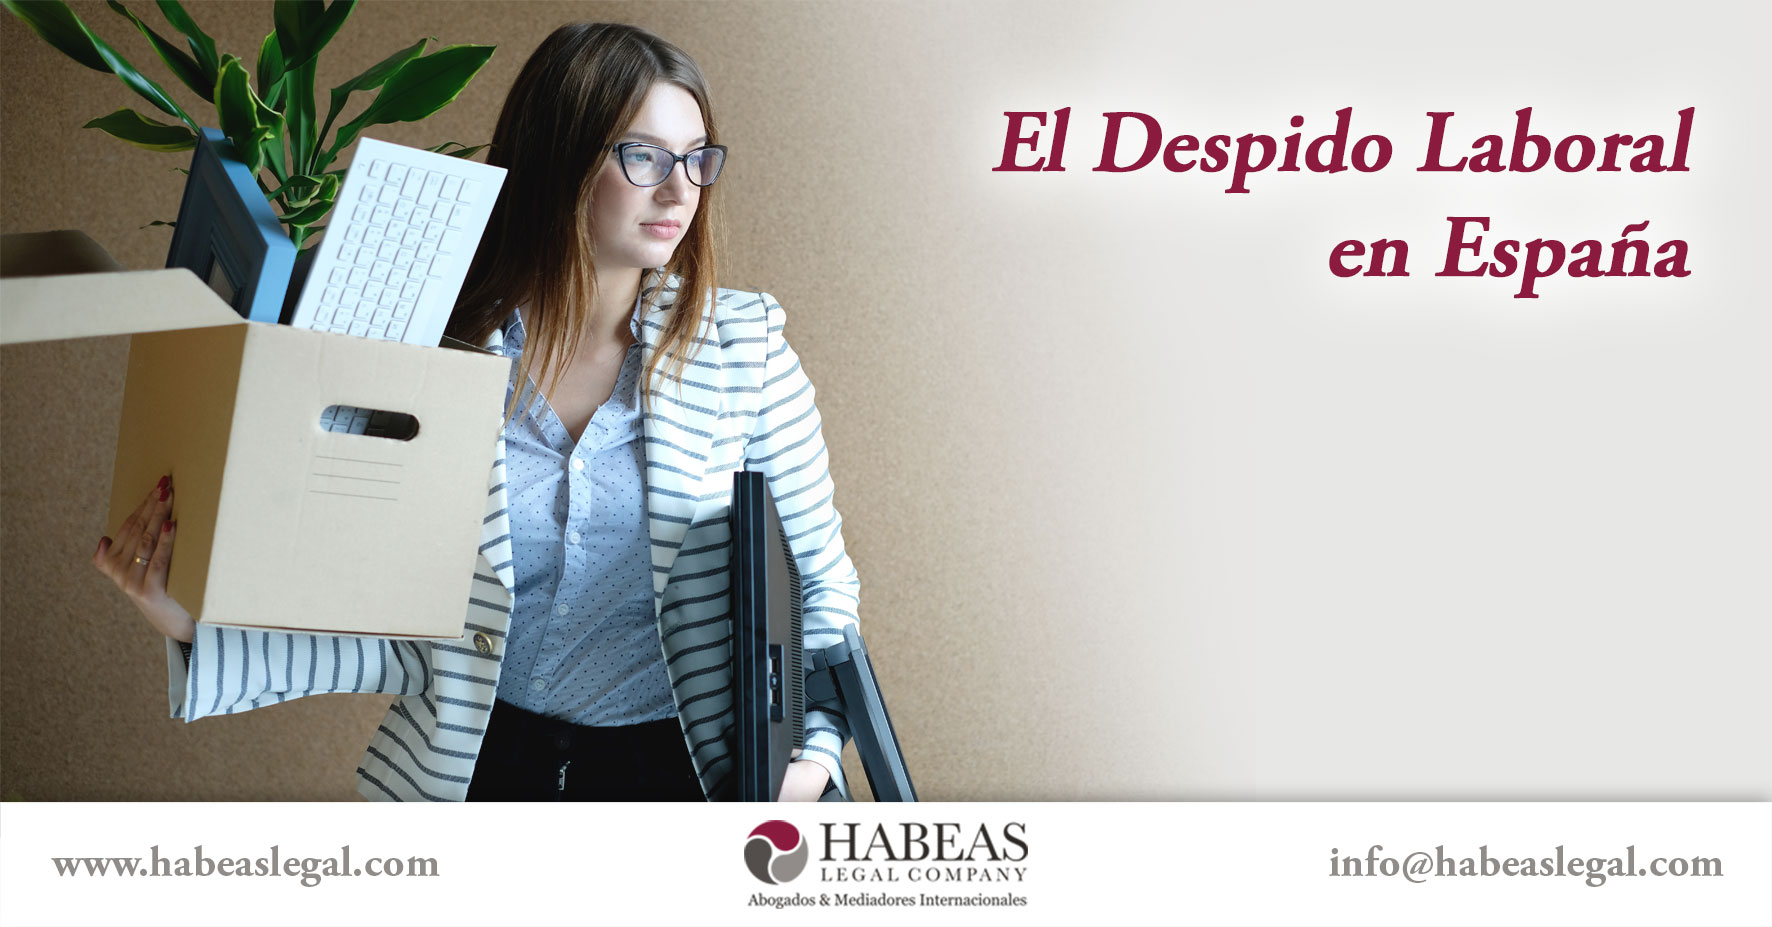 El Despido Laboral Espana Habeas Legal - Derechos y Obligaciones Laborales